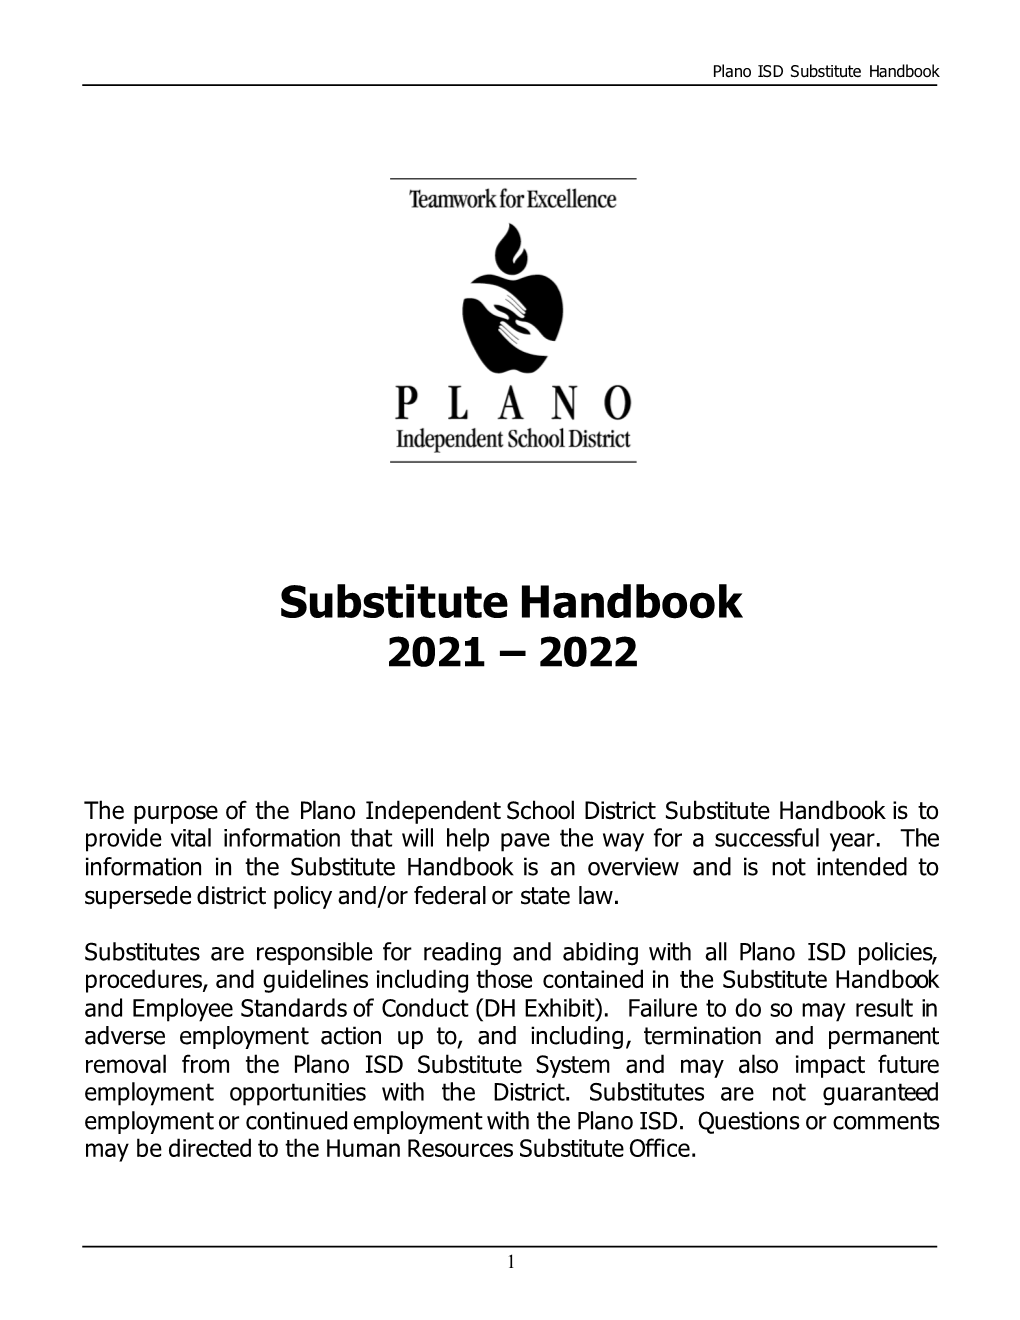 2021-2022 Substitute Handbook